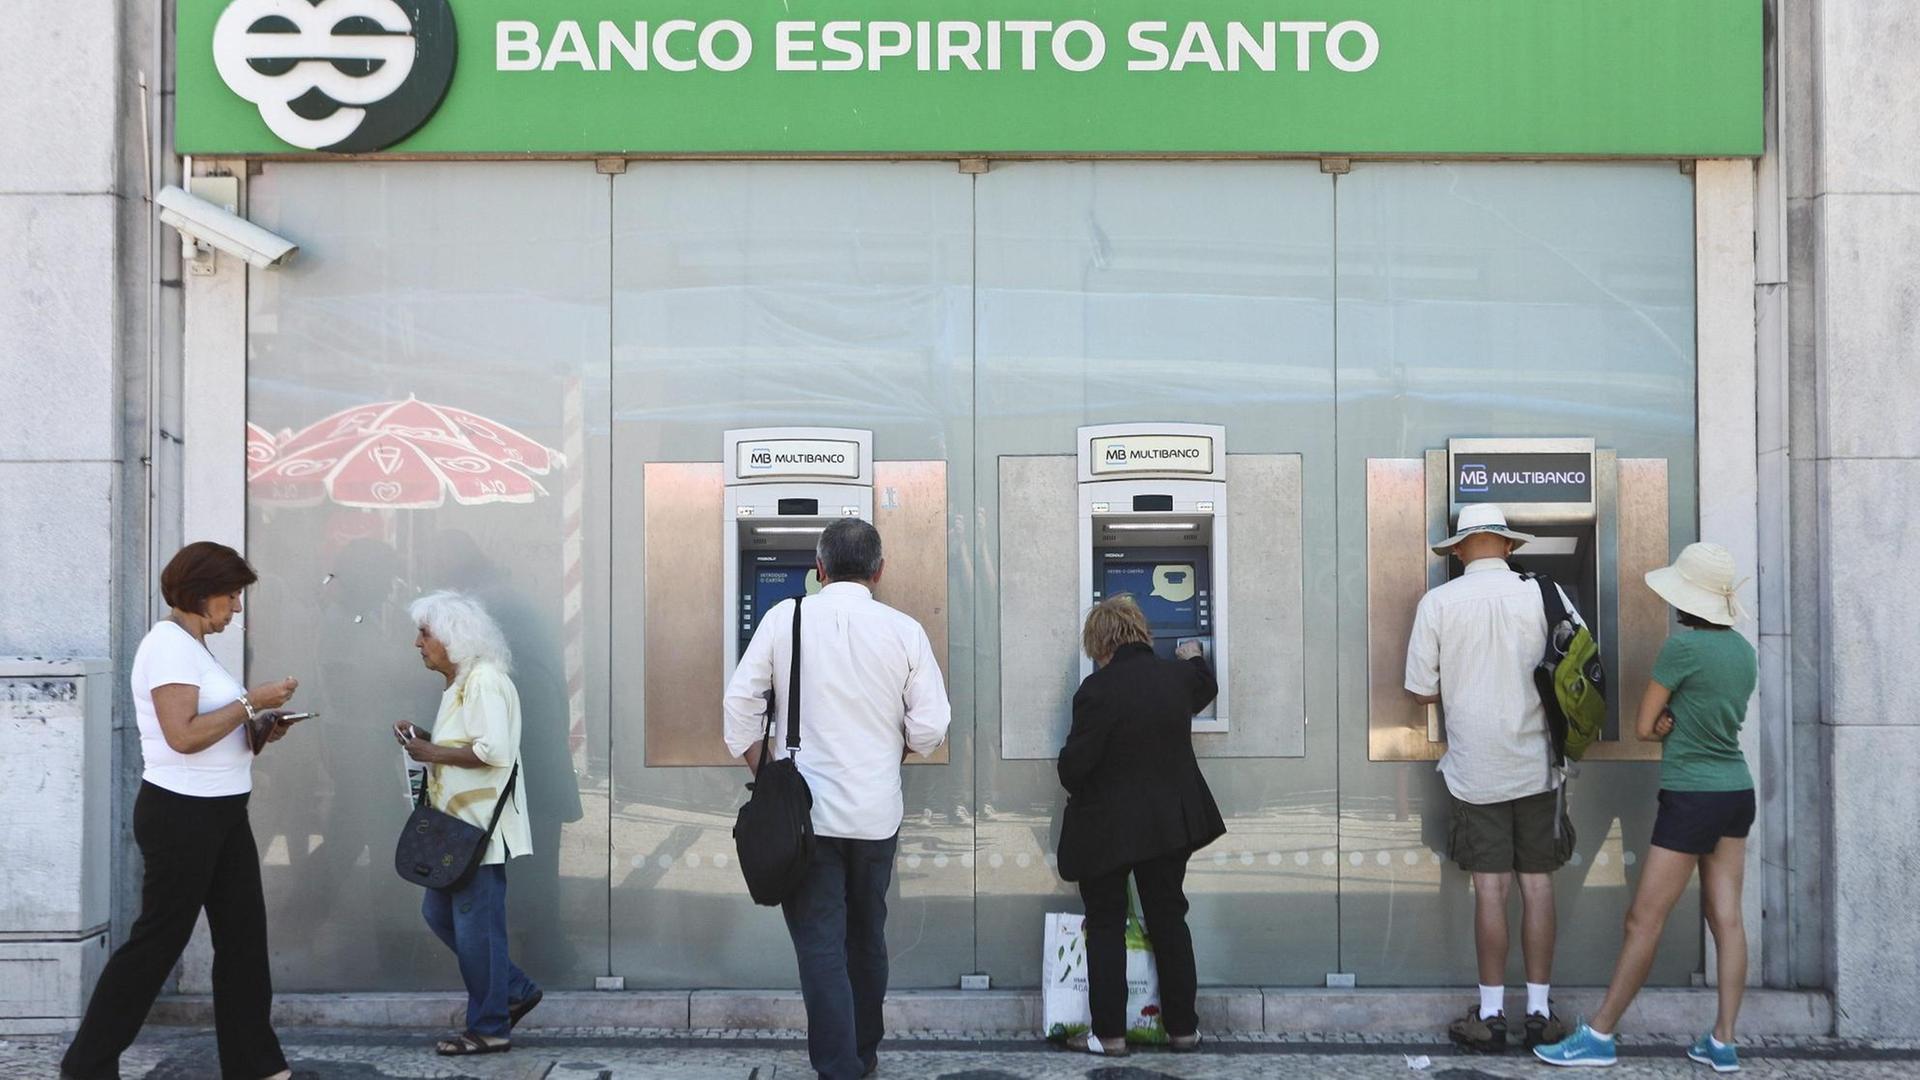 Die portugiesische Bank Espirito Santo in Lissabon